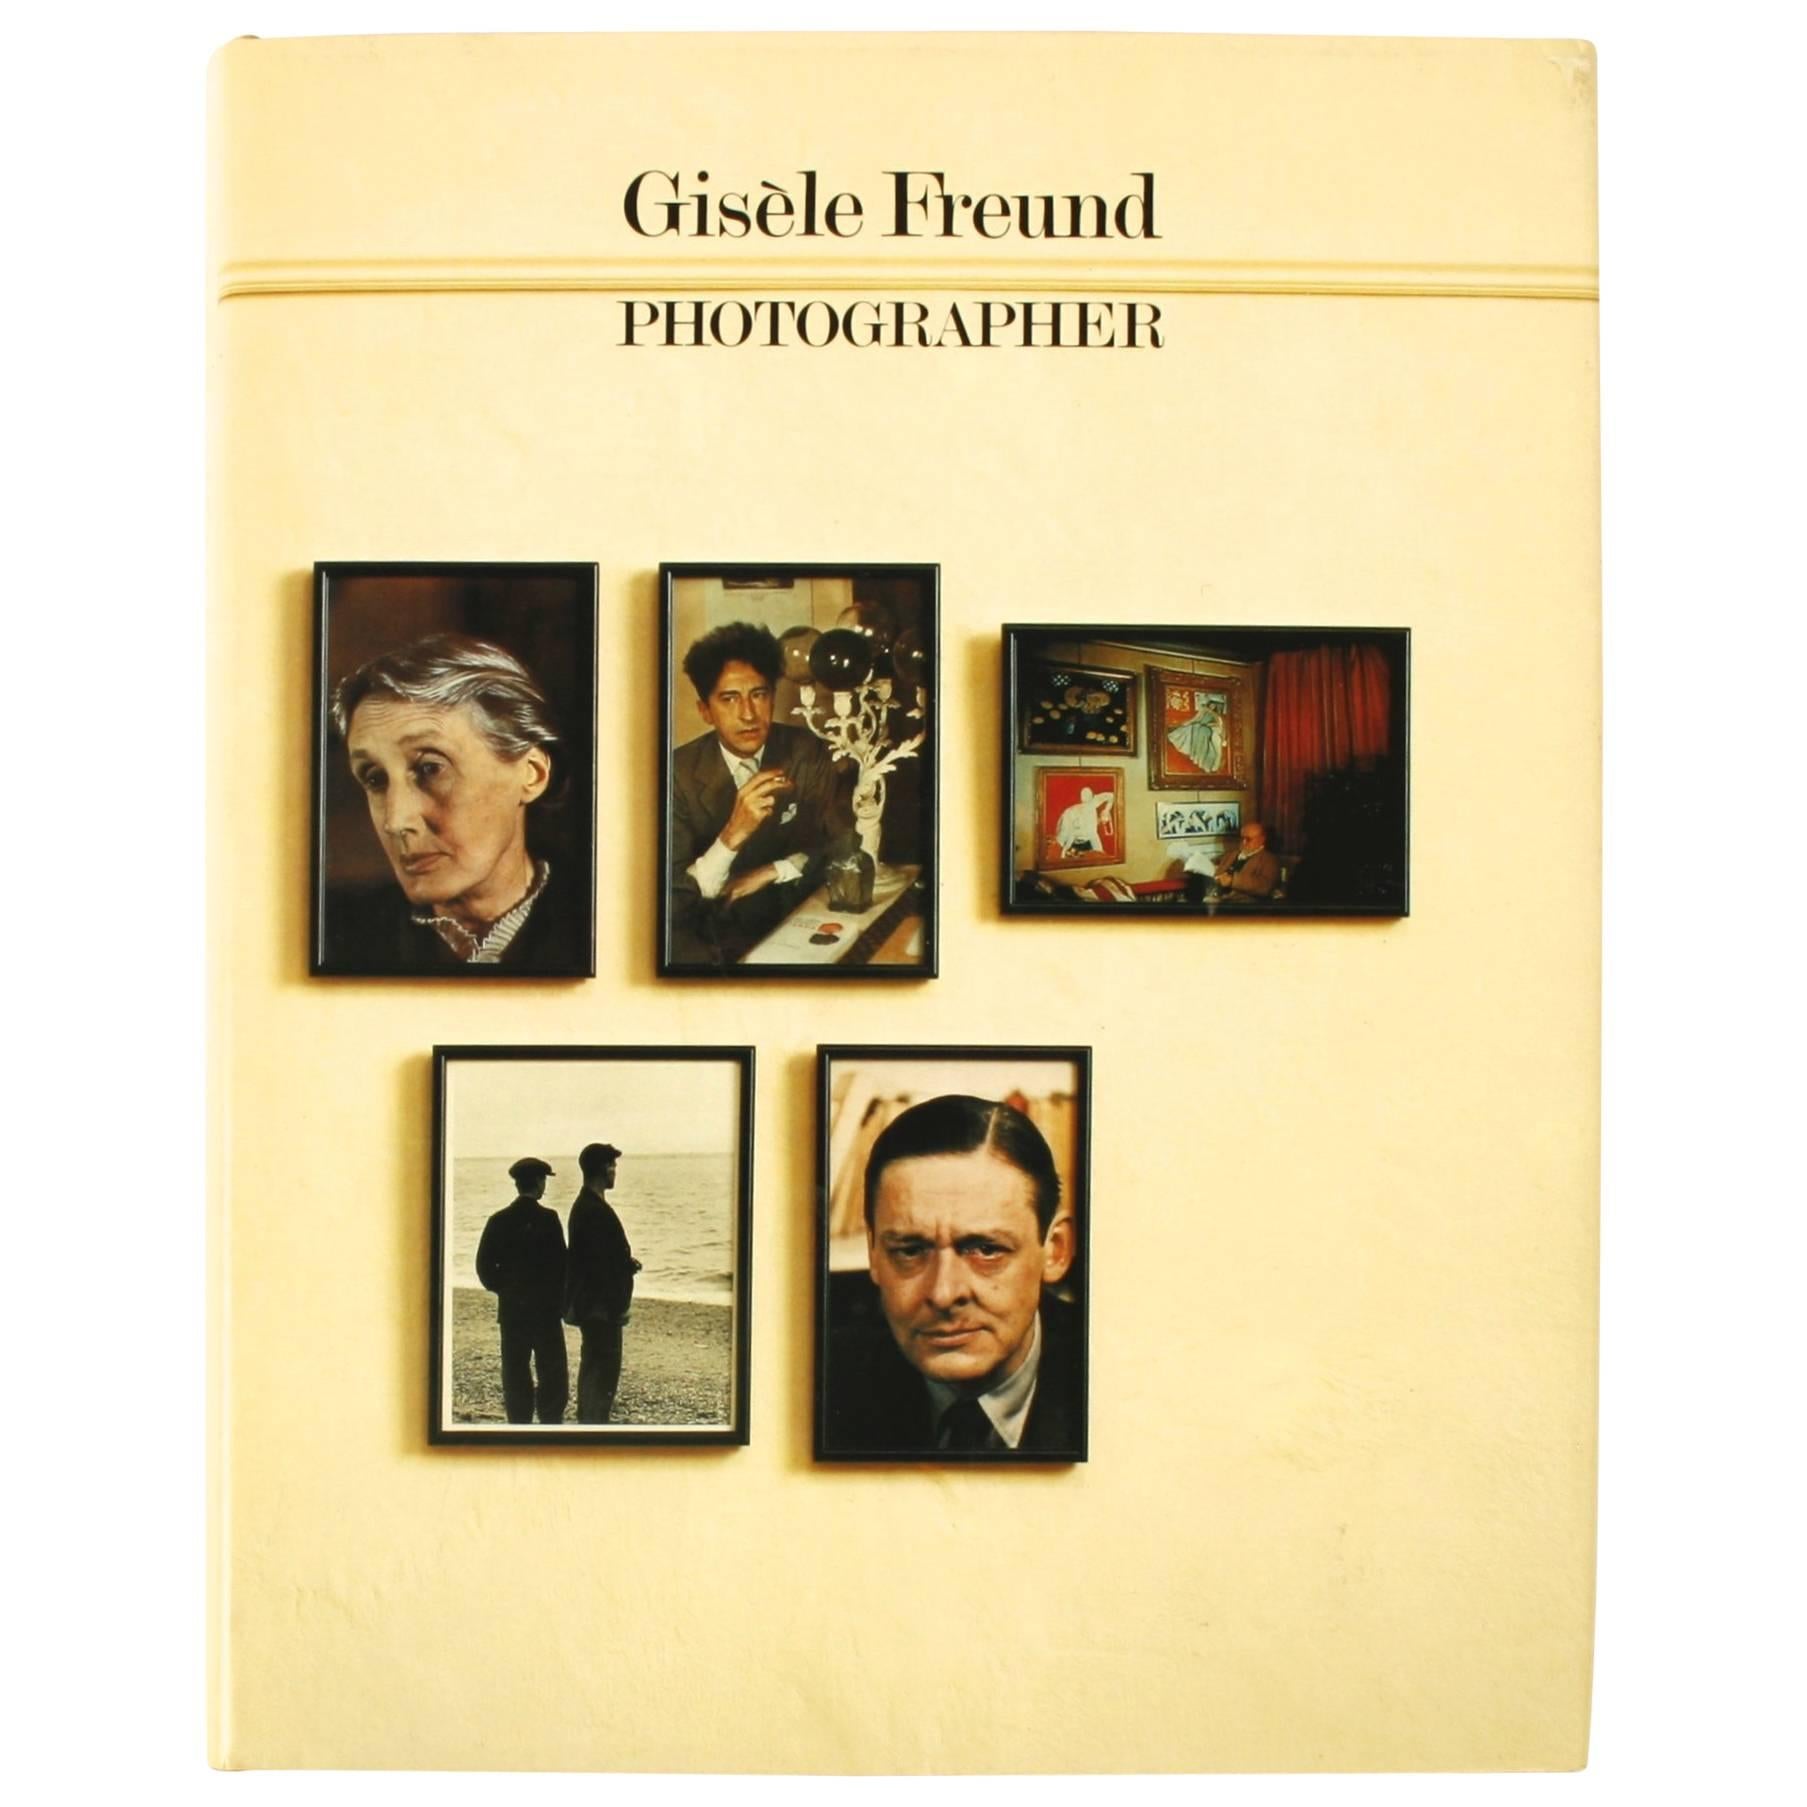 Première édition de Gisele Freund, photographe